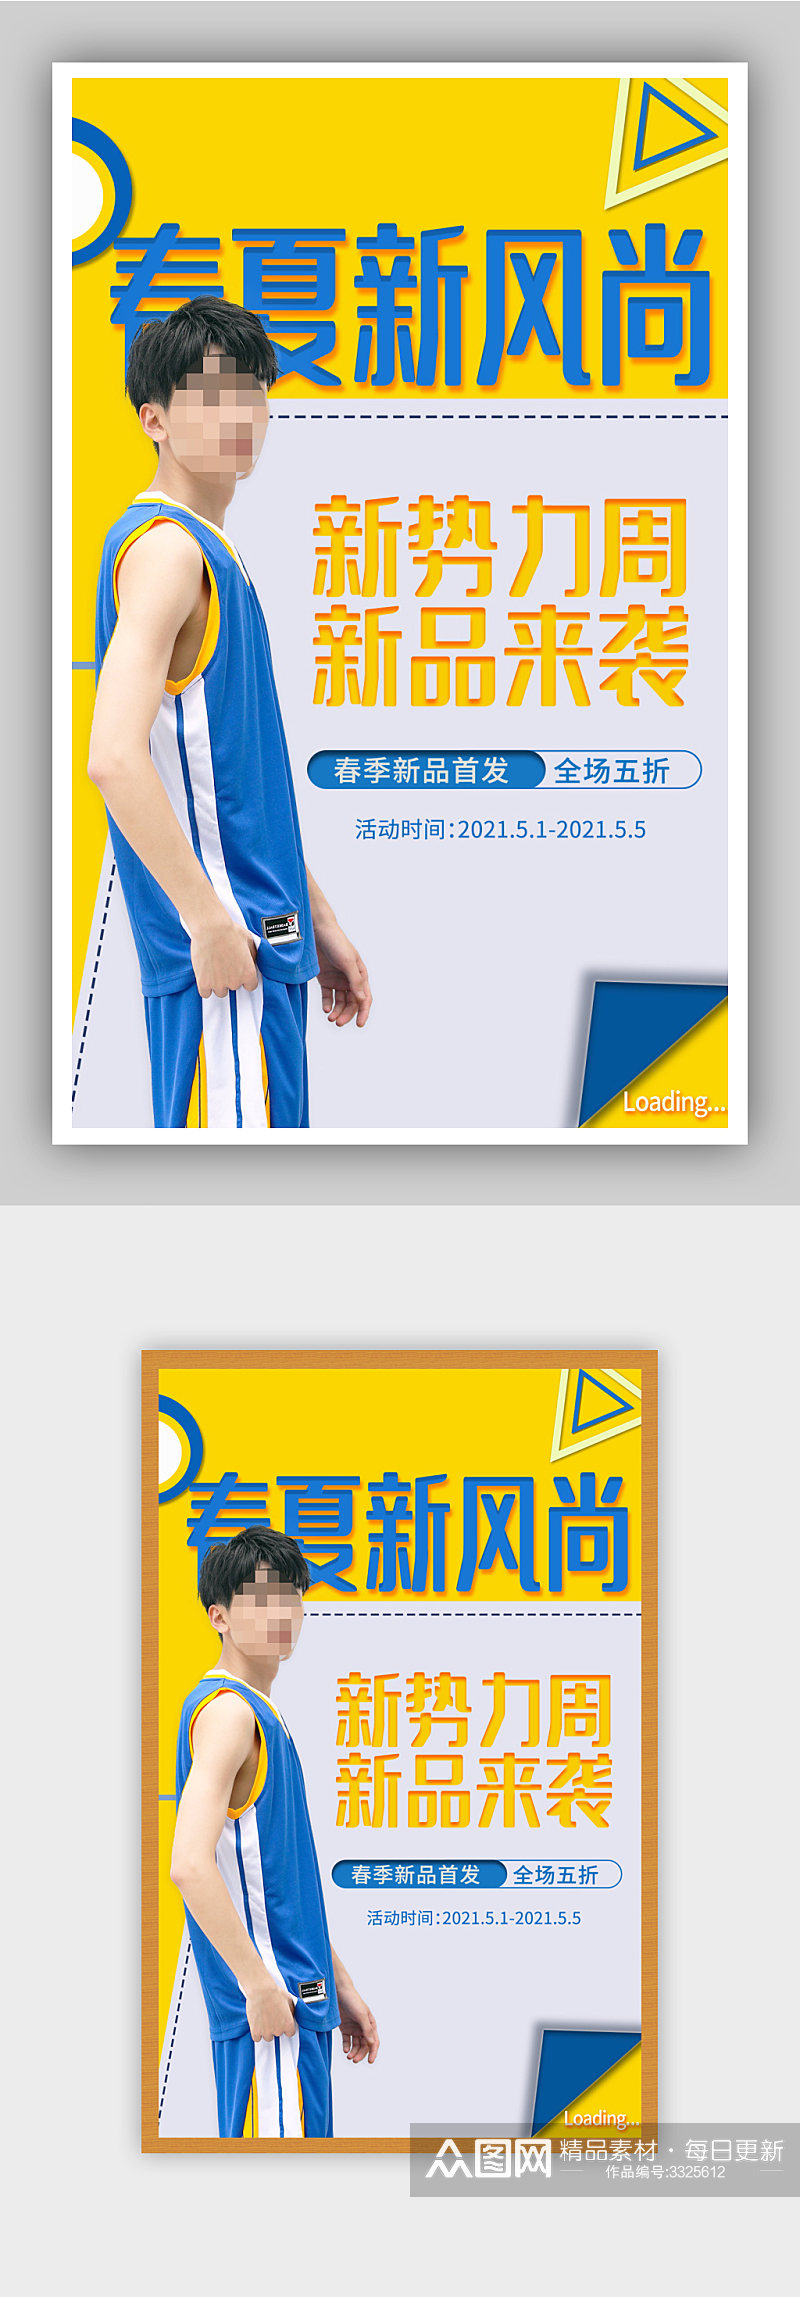 活力运动风黄蓝色春季男装上新促销全屏海报素材